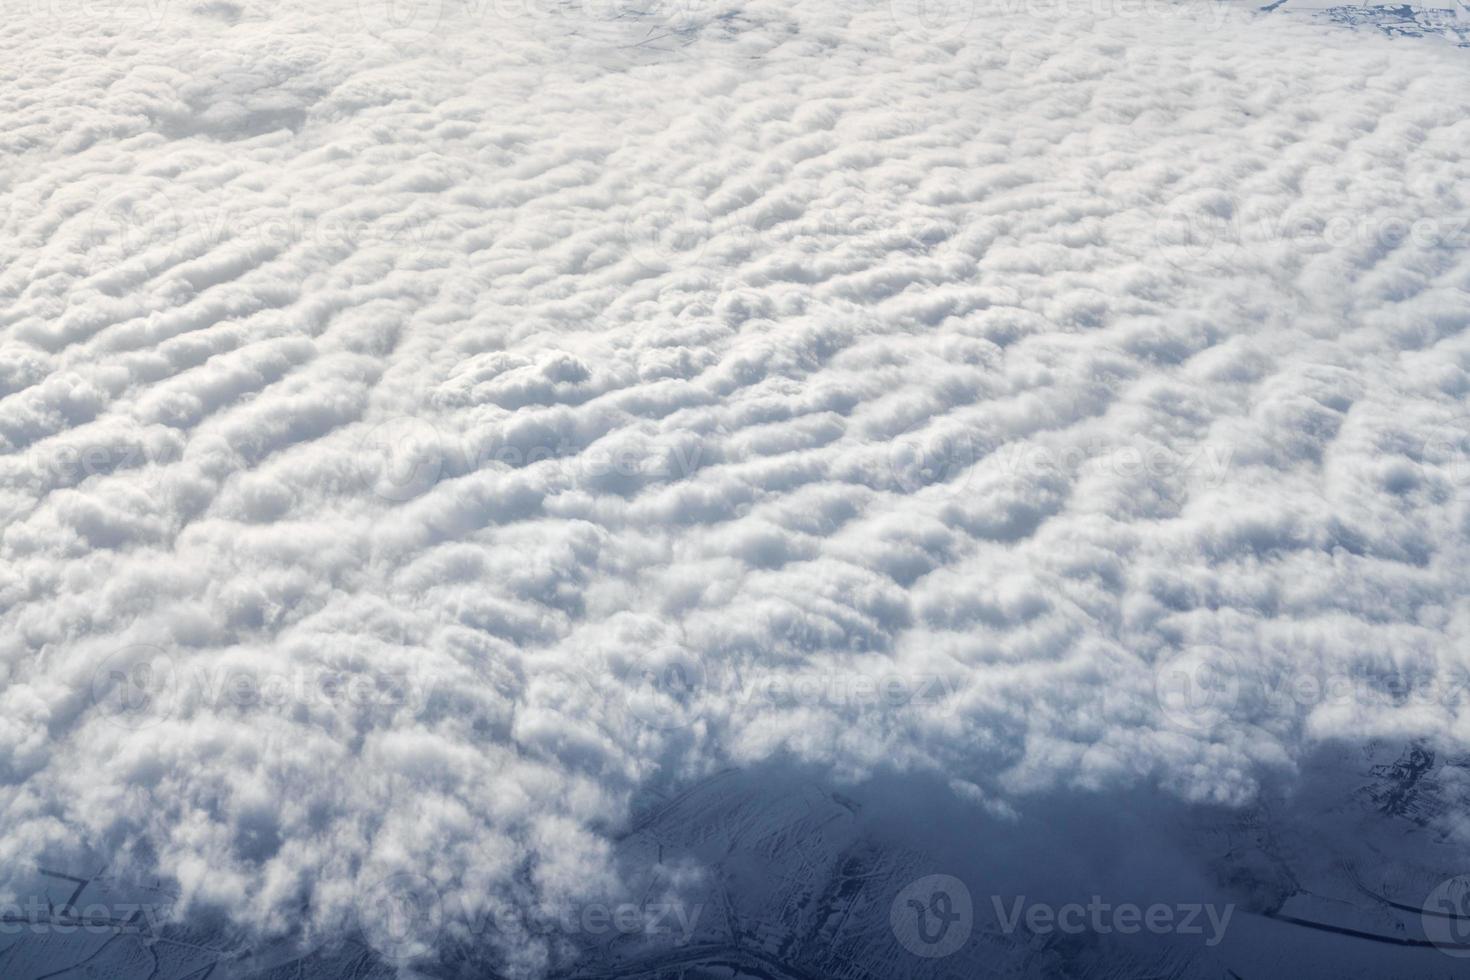 sobre nuvens vista superior da janela da aeronave, grossas nuvens azuis brancas parecem espuma macia foto